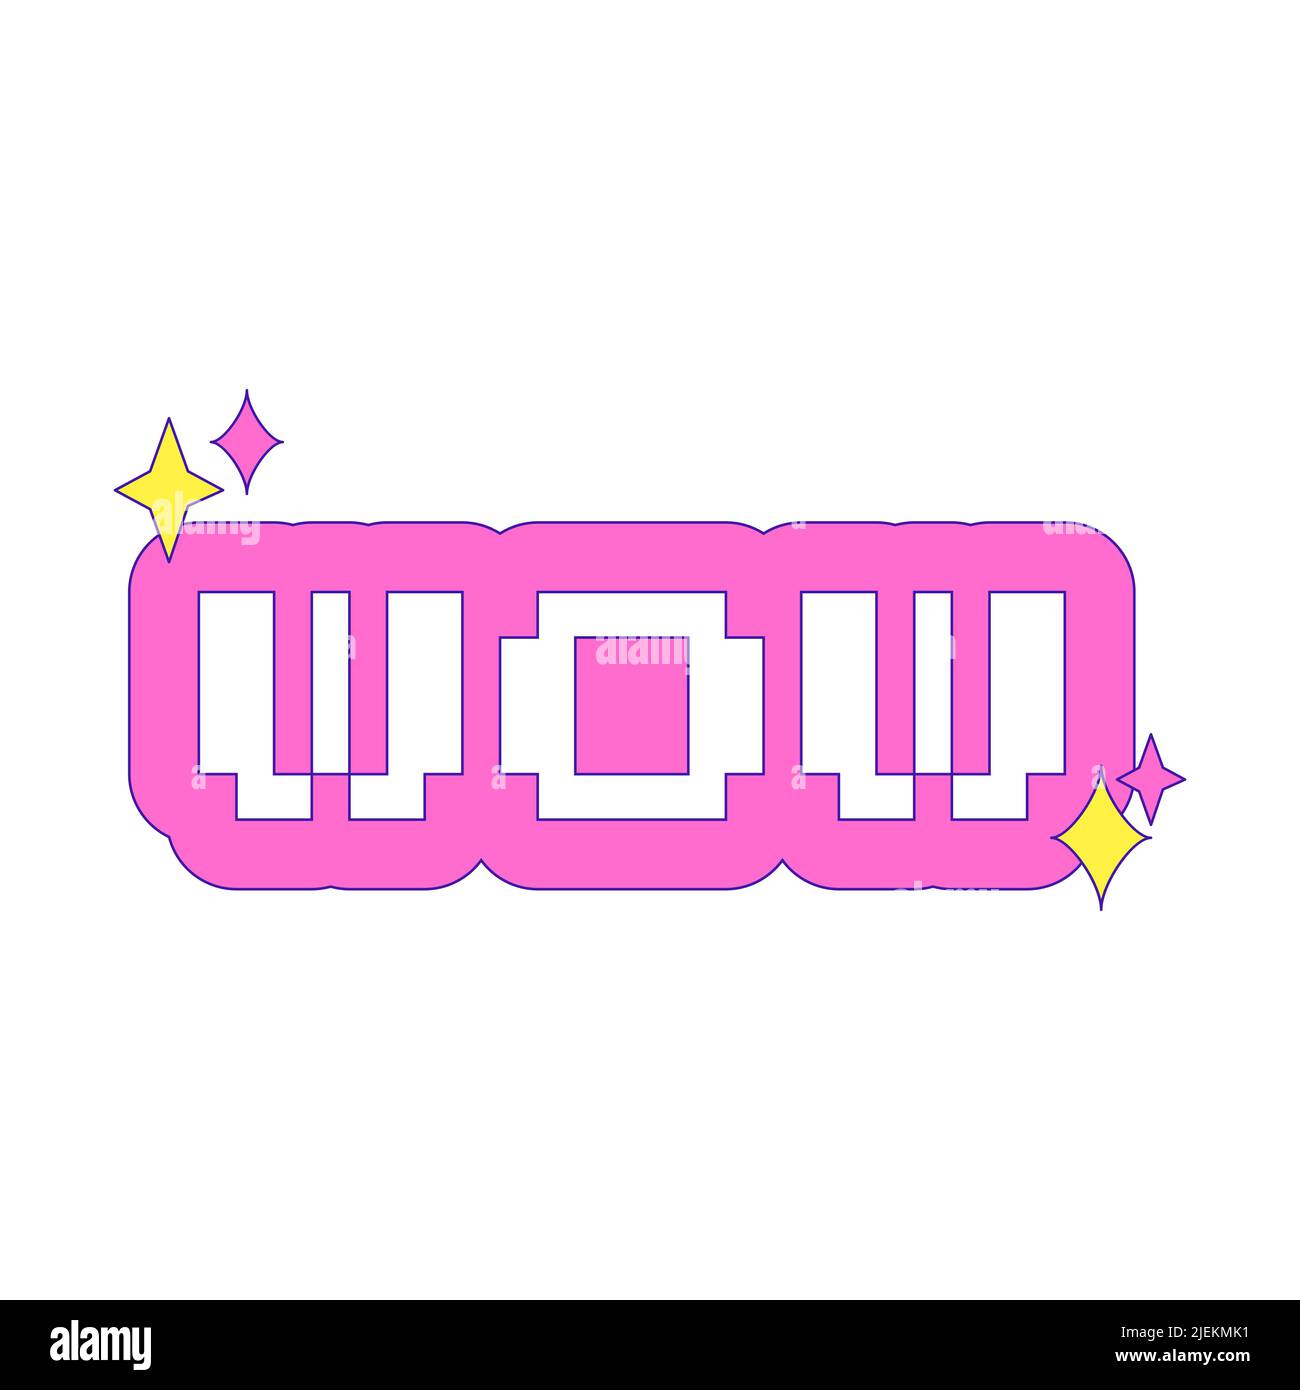 Adesivo Y2K. La parola WOW. Font retro pixel. Adesivo con contorno rosa ed elementi bling. Nostalgia per il 2000s. L'illustrazione vettoriale di testo semplice è Illustrazione Vettoriale